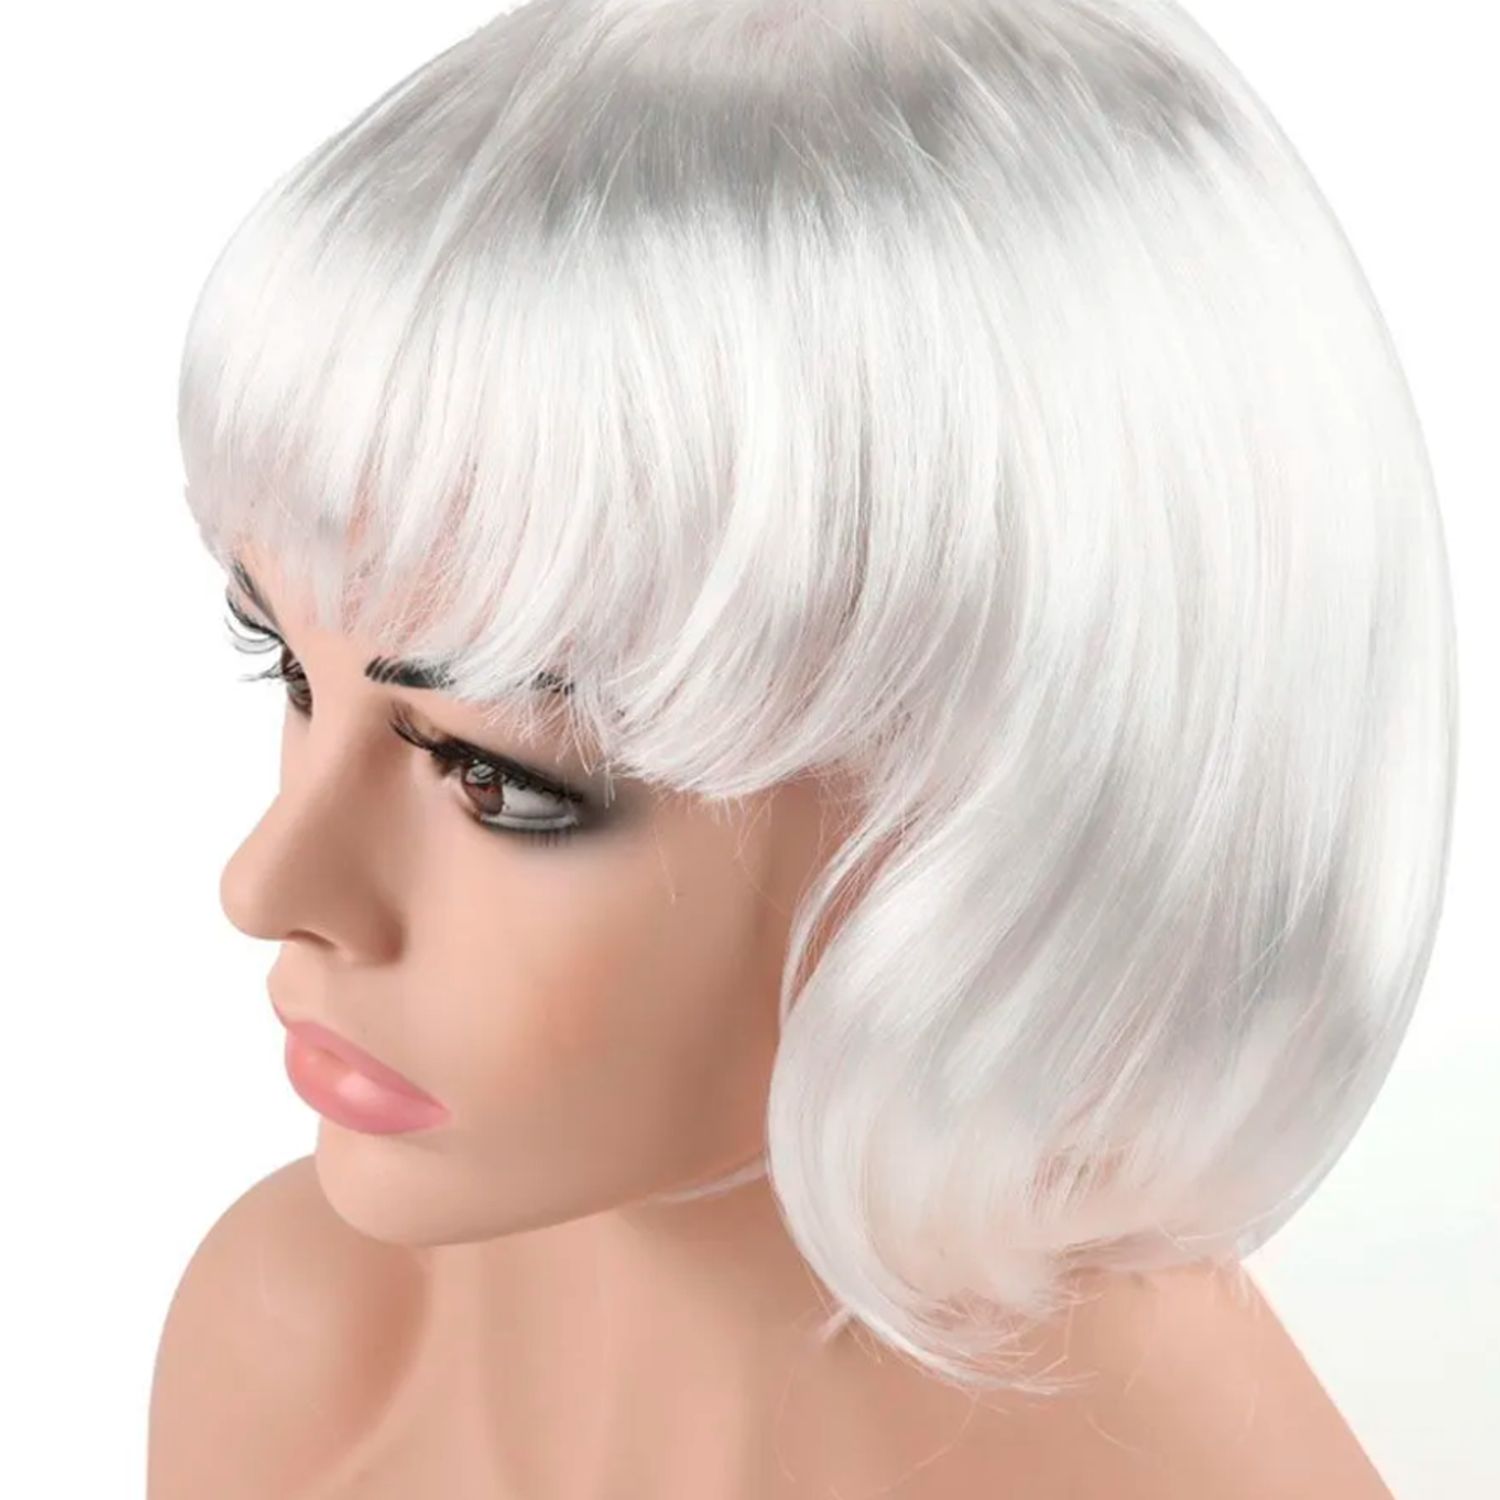 Парик карнавальный Riota серебристо-белое каре искусственный волос 110 гр ДБ6230913 - фото 2